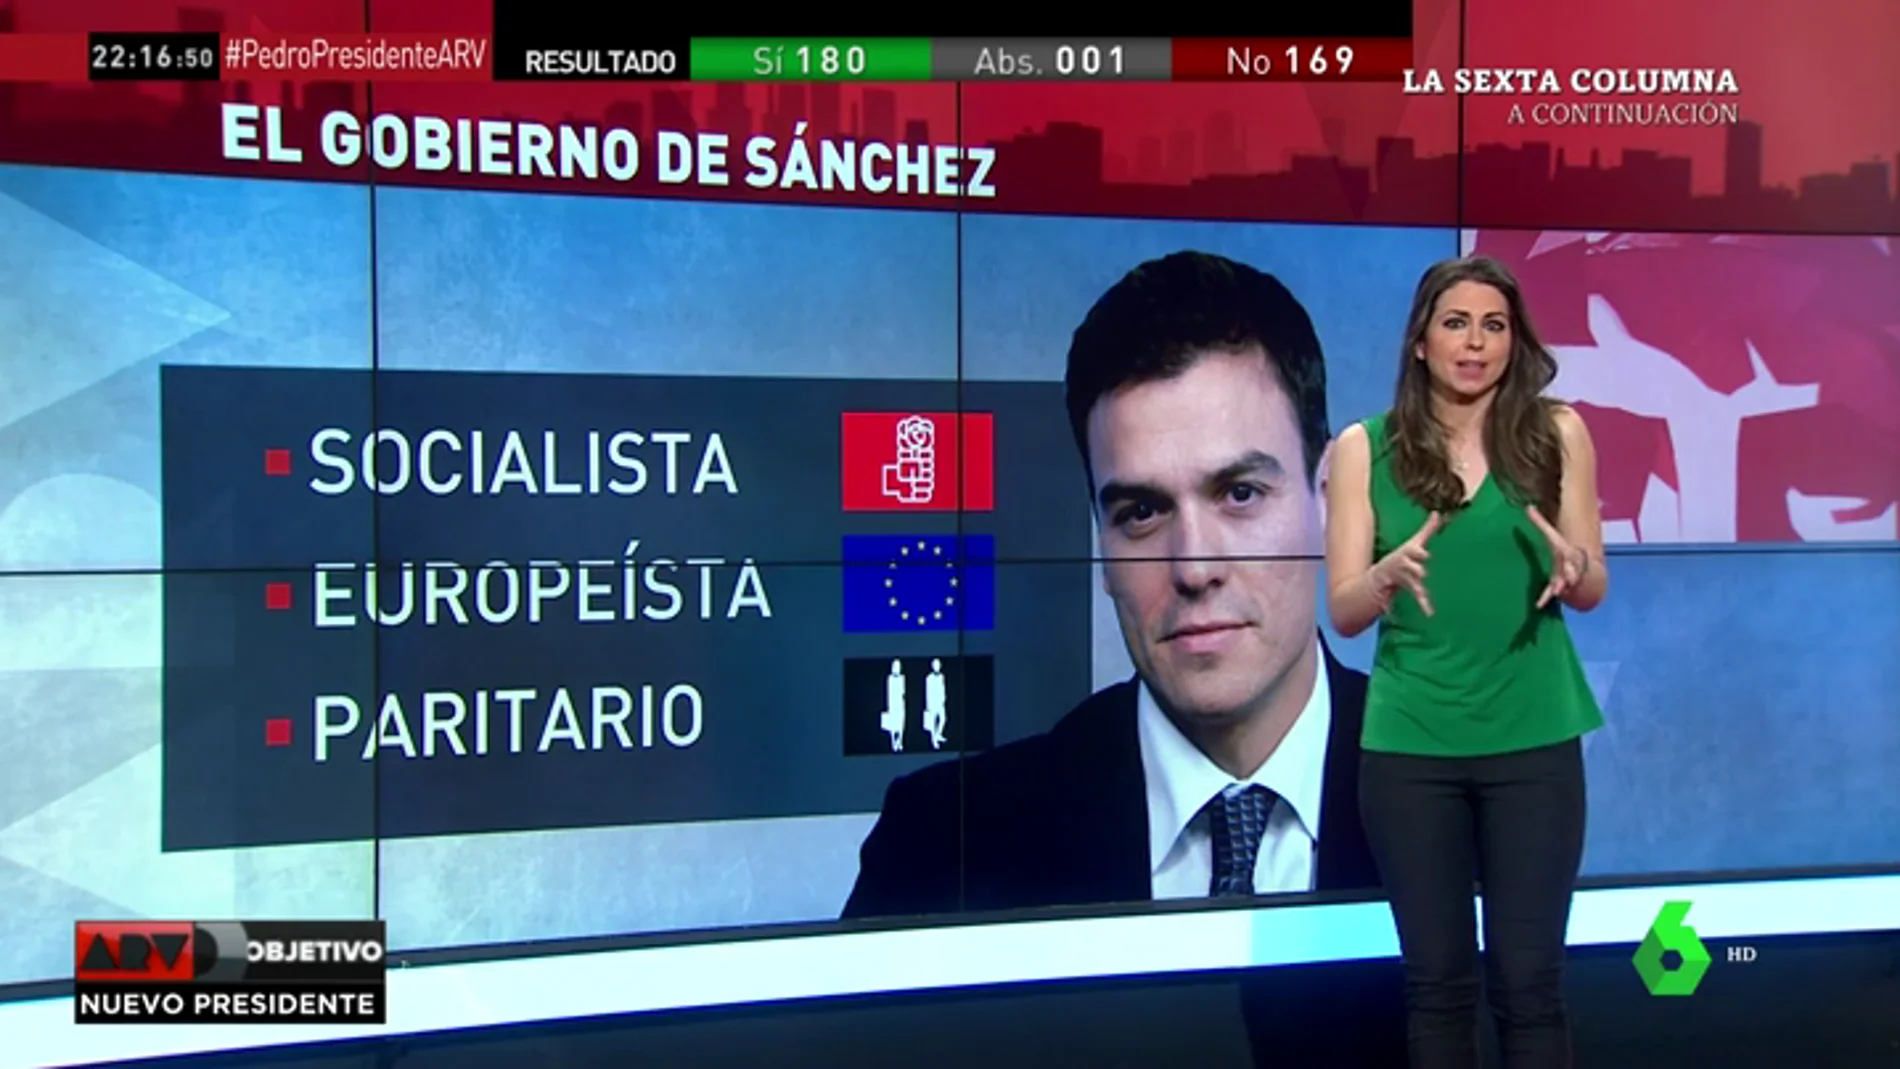 <p>Socialista, europeísta y paritario: los tres pilares del Gobierno de Pedro Sánchez</p>